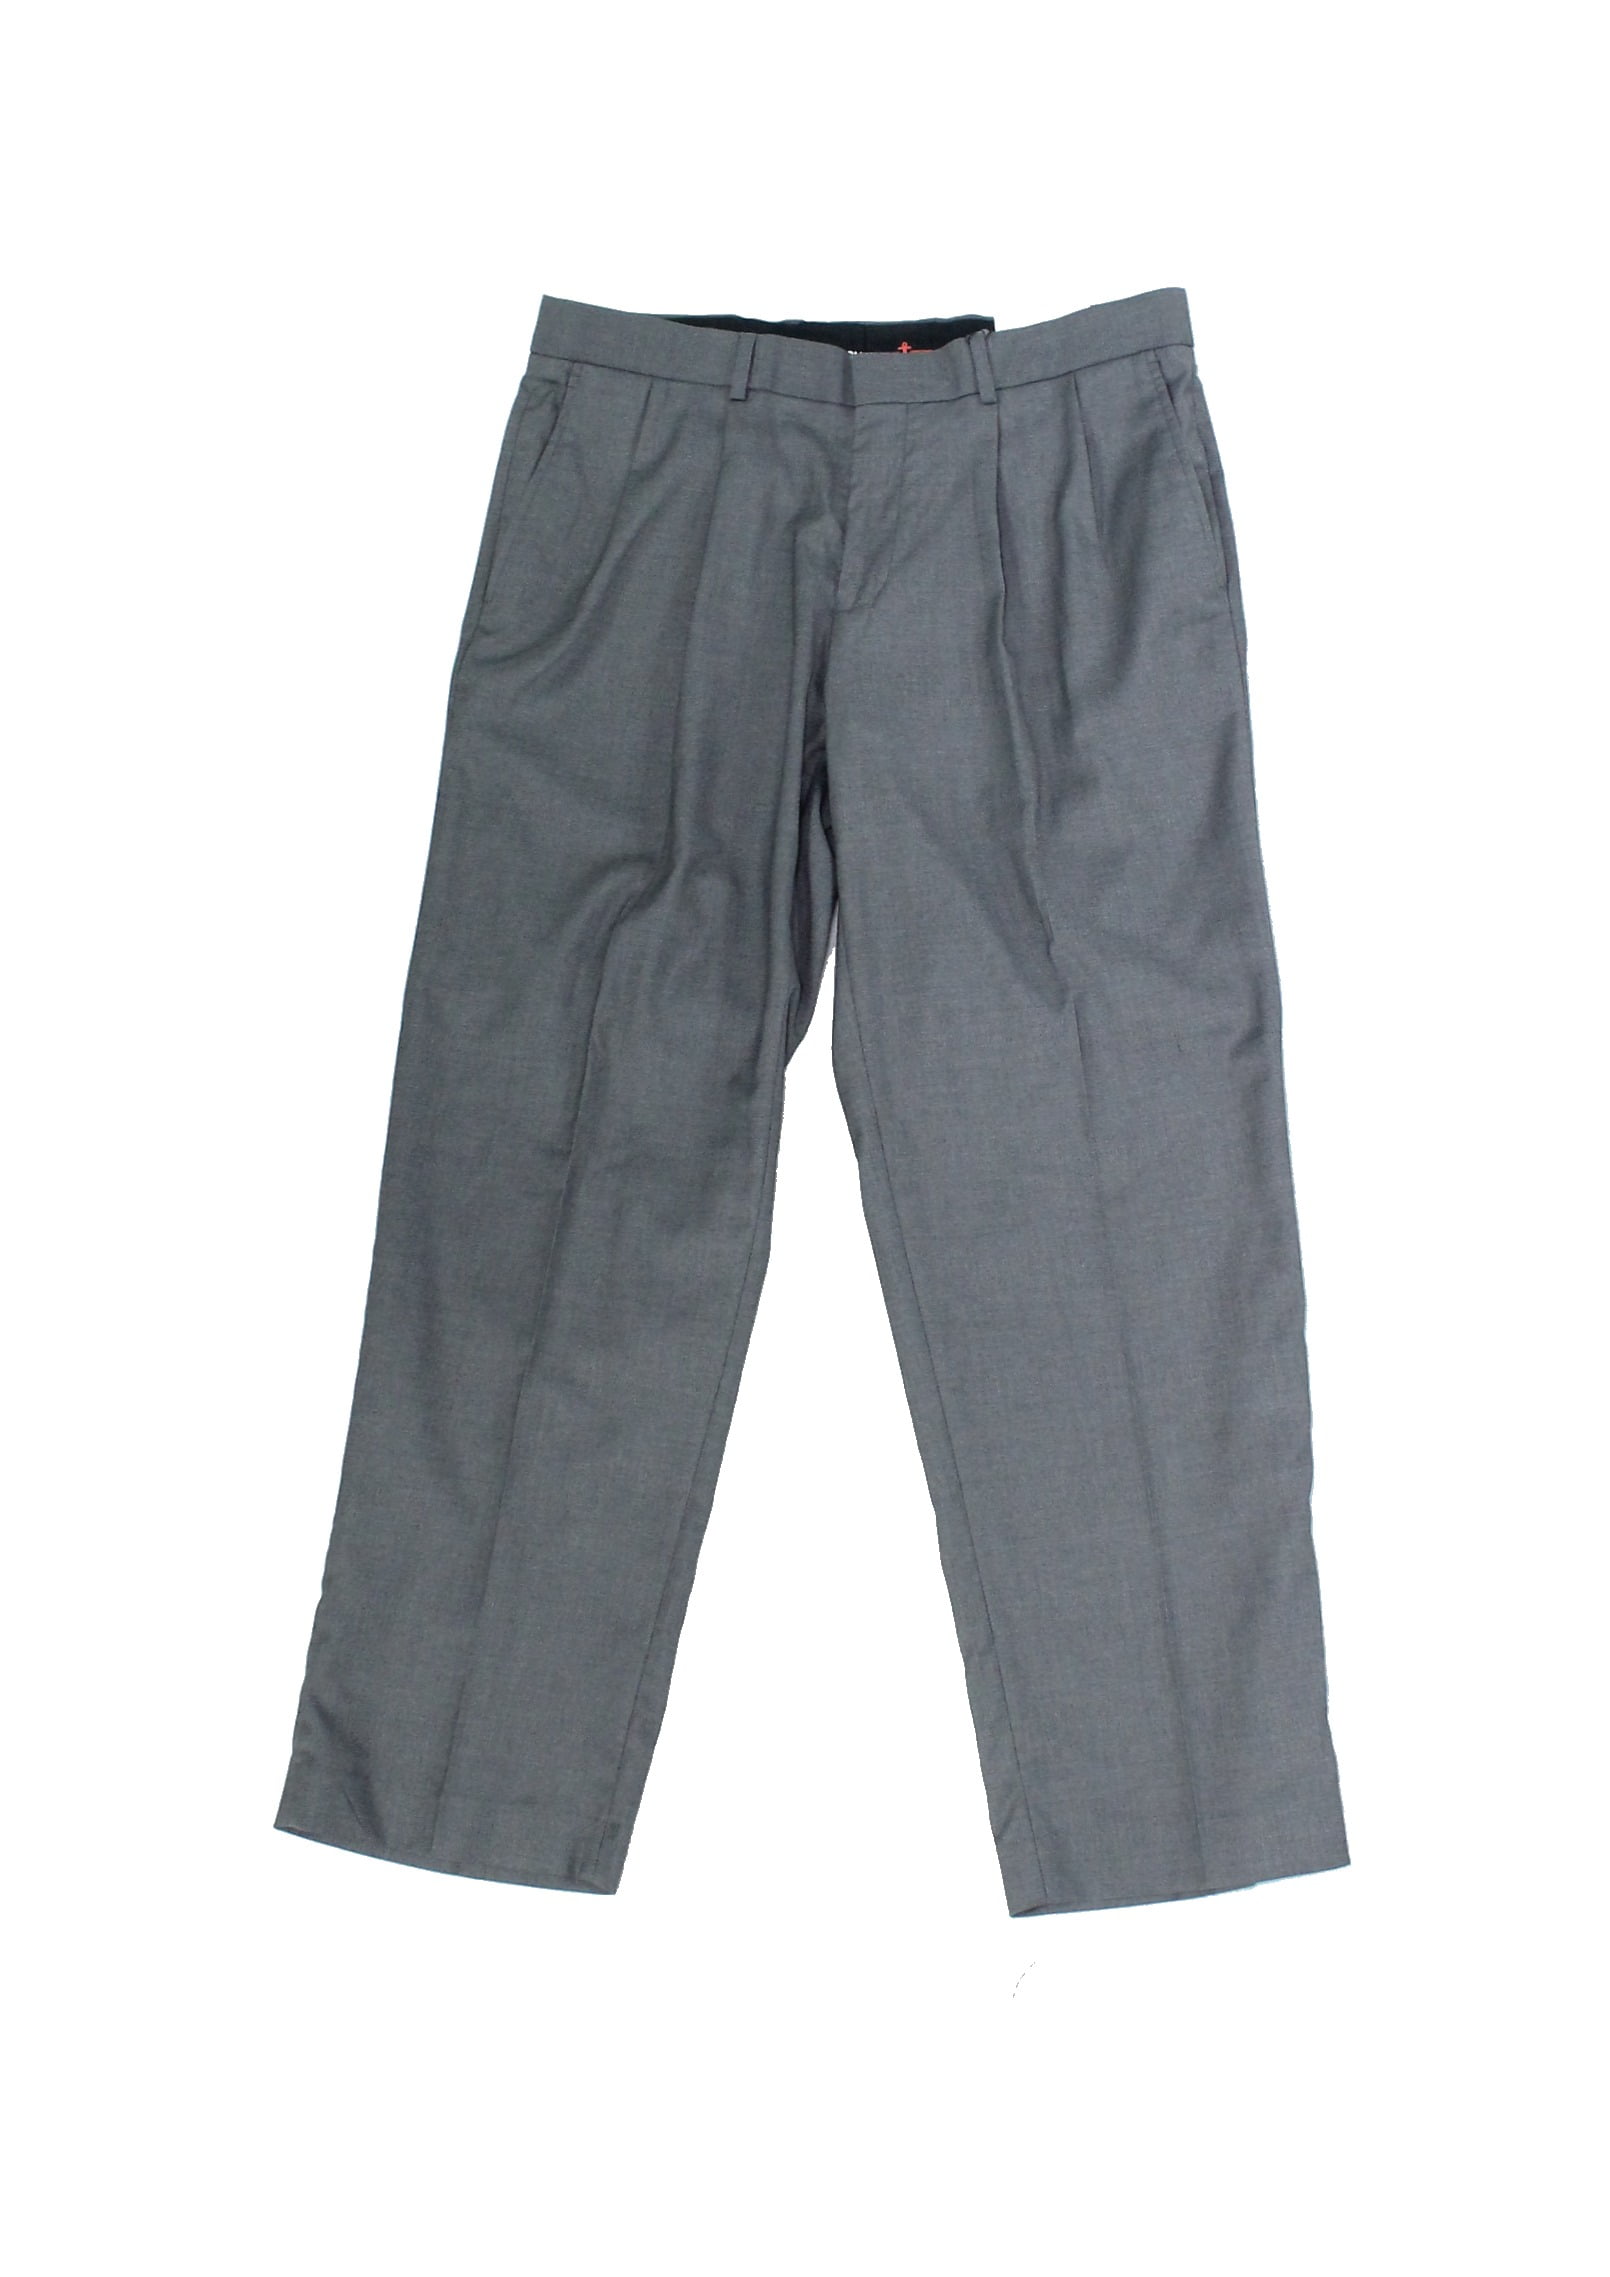 Dockers Mens Dress Pants 34x29 Straight-Fit Pleated Stretch - Walmart.com